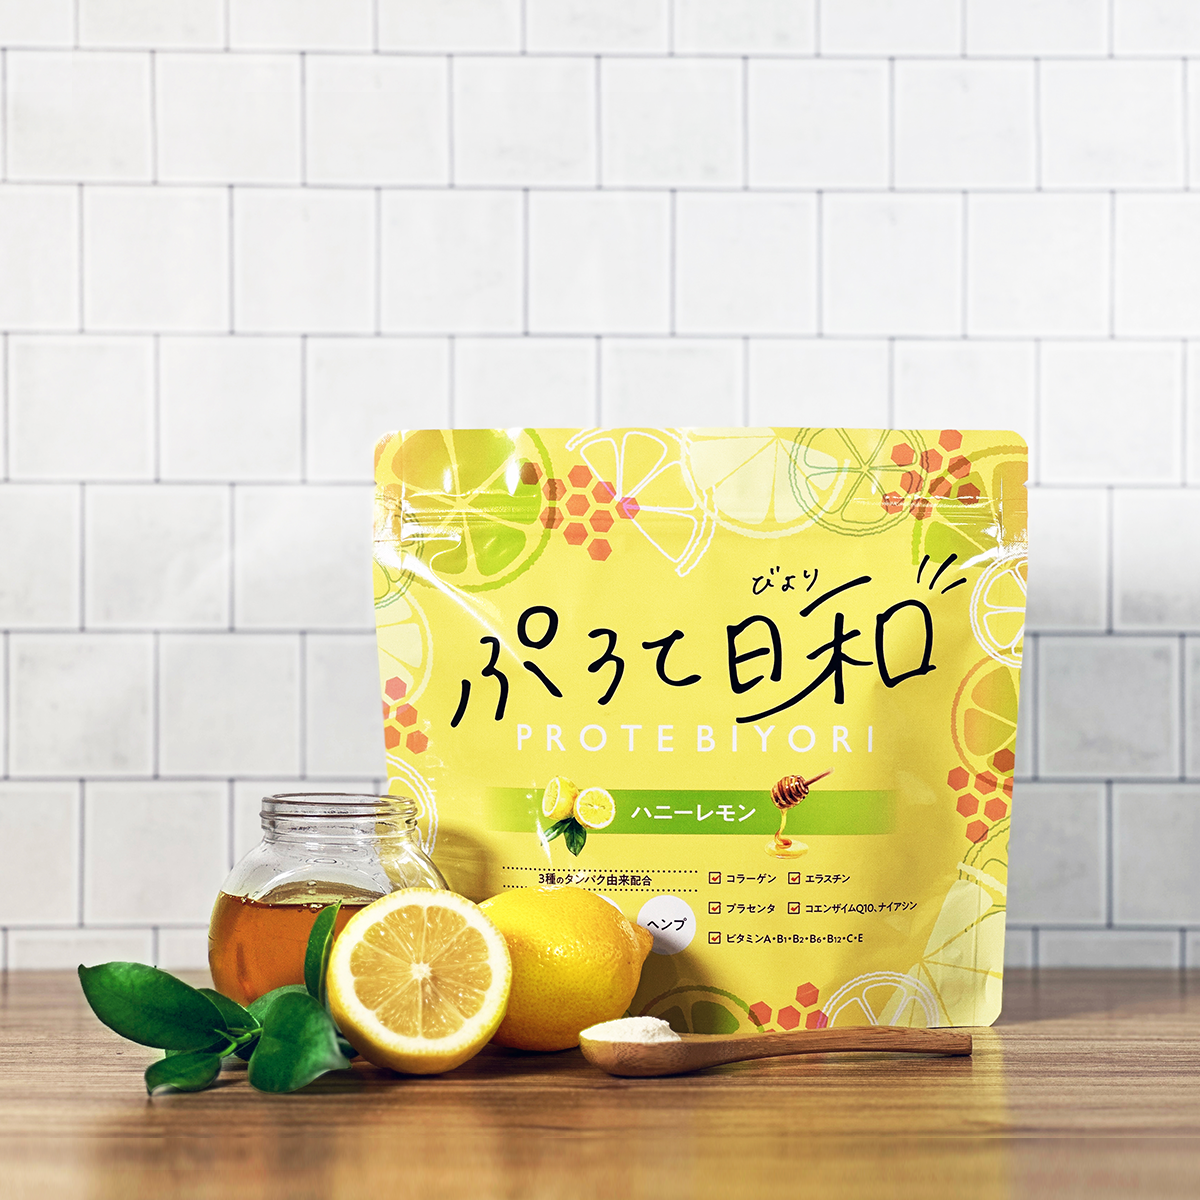 PROTE BIYORI Honey Lemon 280g (28 servings)